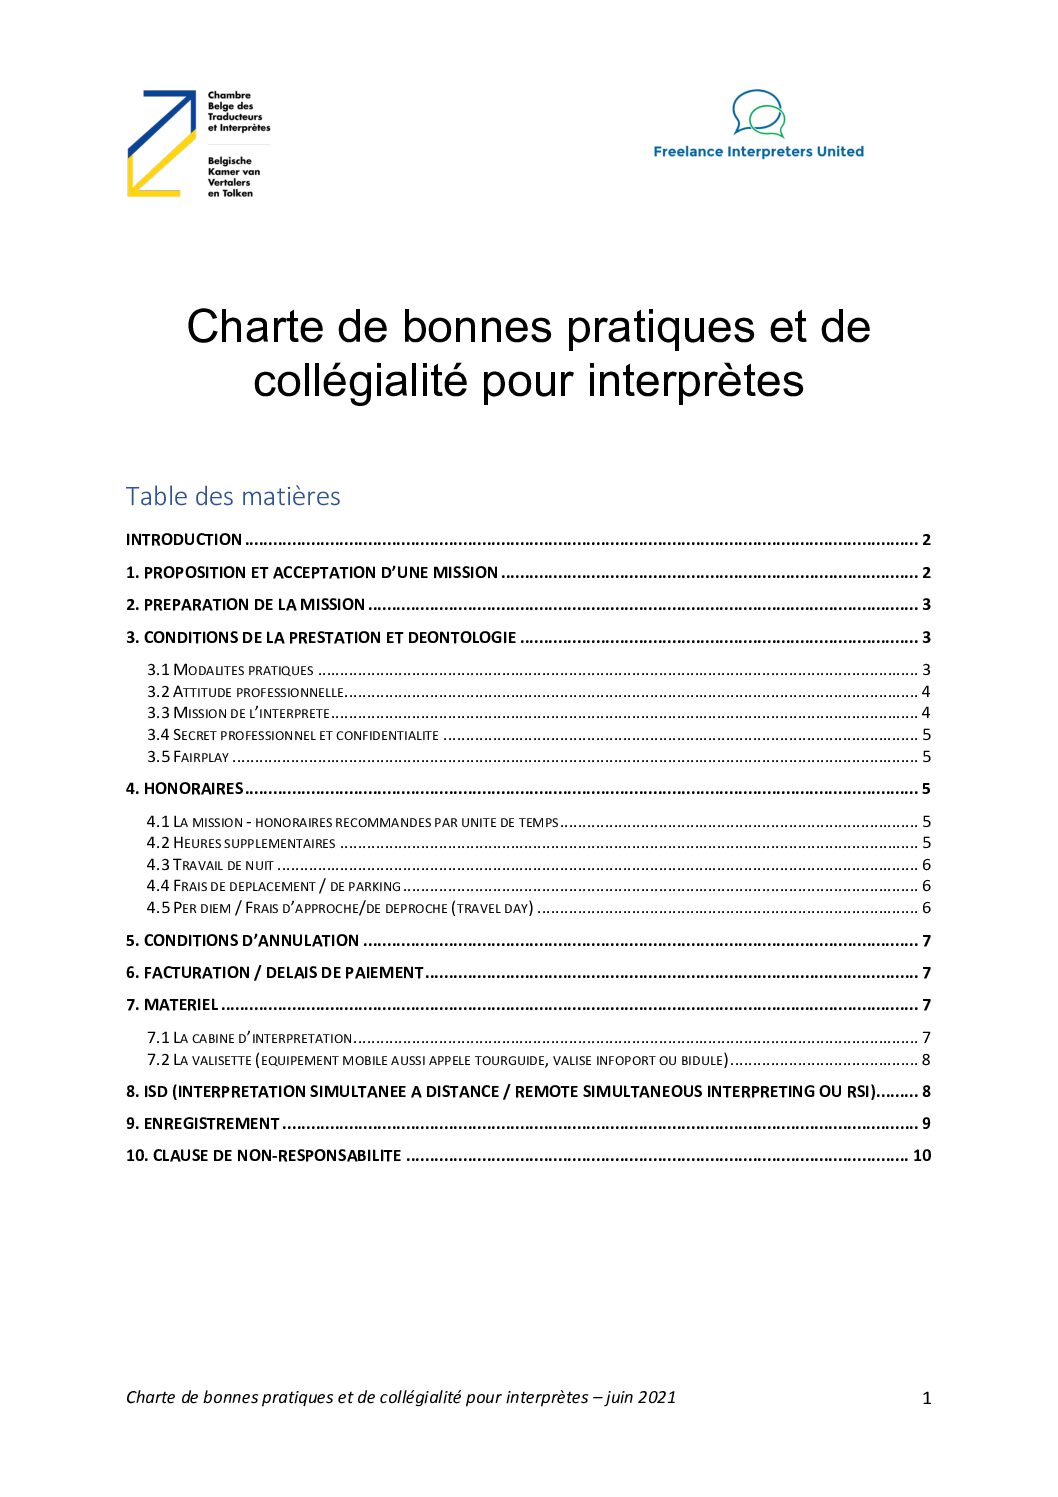 Image de présentation pour le document : Charte de bonnes pratiques et de collégialité pour interprètes